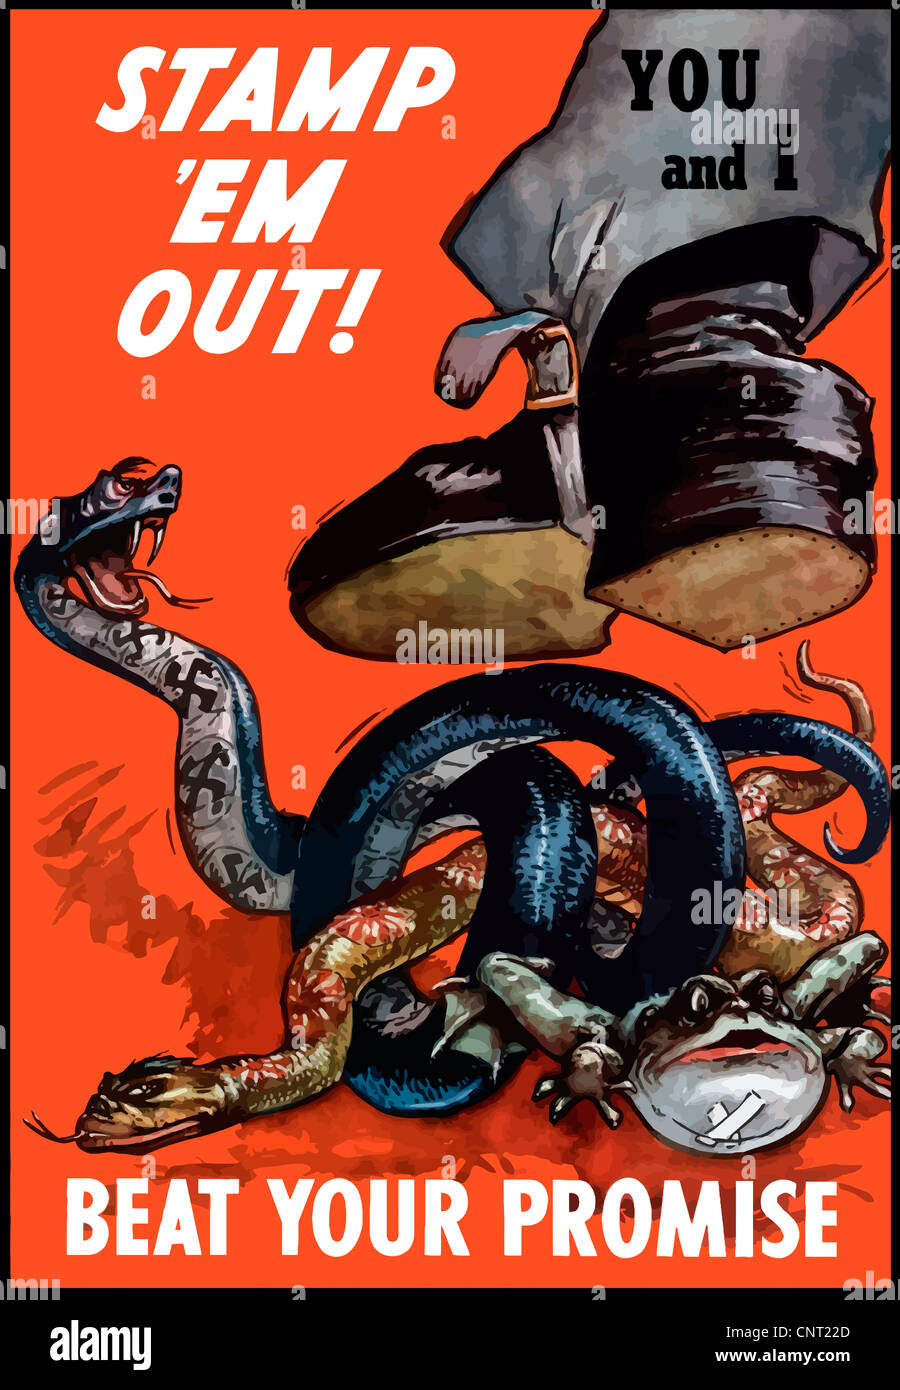 Vintage de la II Guerra Mundial cartel de una etiqueta de inicio Usted y yo estampando abajo en dos serpientes y una rana toro, representando a Alemania y Japón. Foto de stock